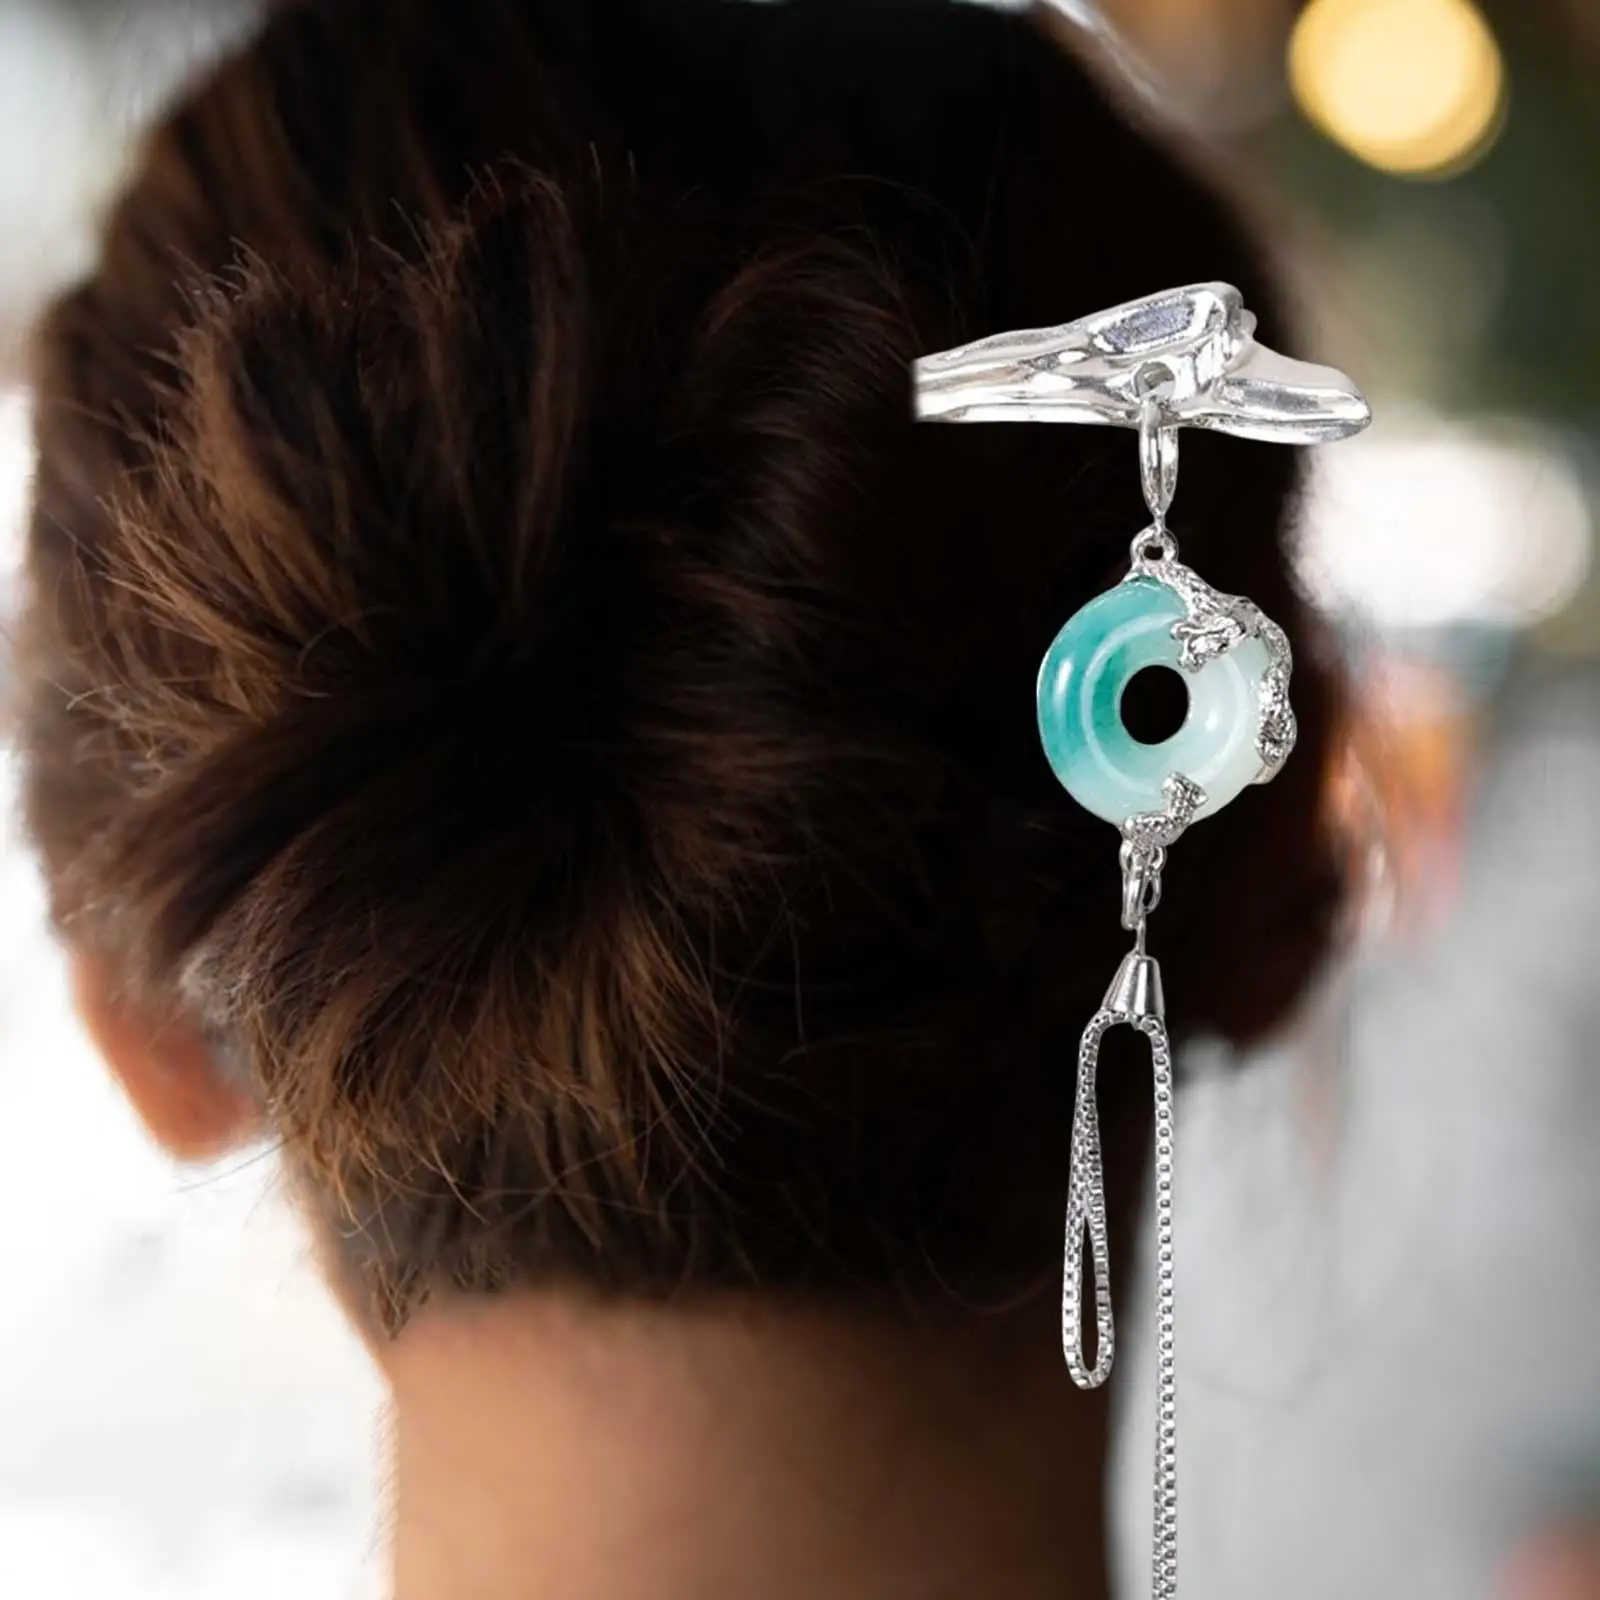 Retro Hairpins Metal Decorative with Tassel Hair Pins Hair DIY Accessory Tassel Hair Chopsticks for Women Girls Long Curly Hair